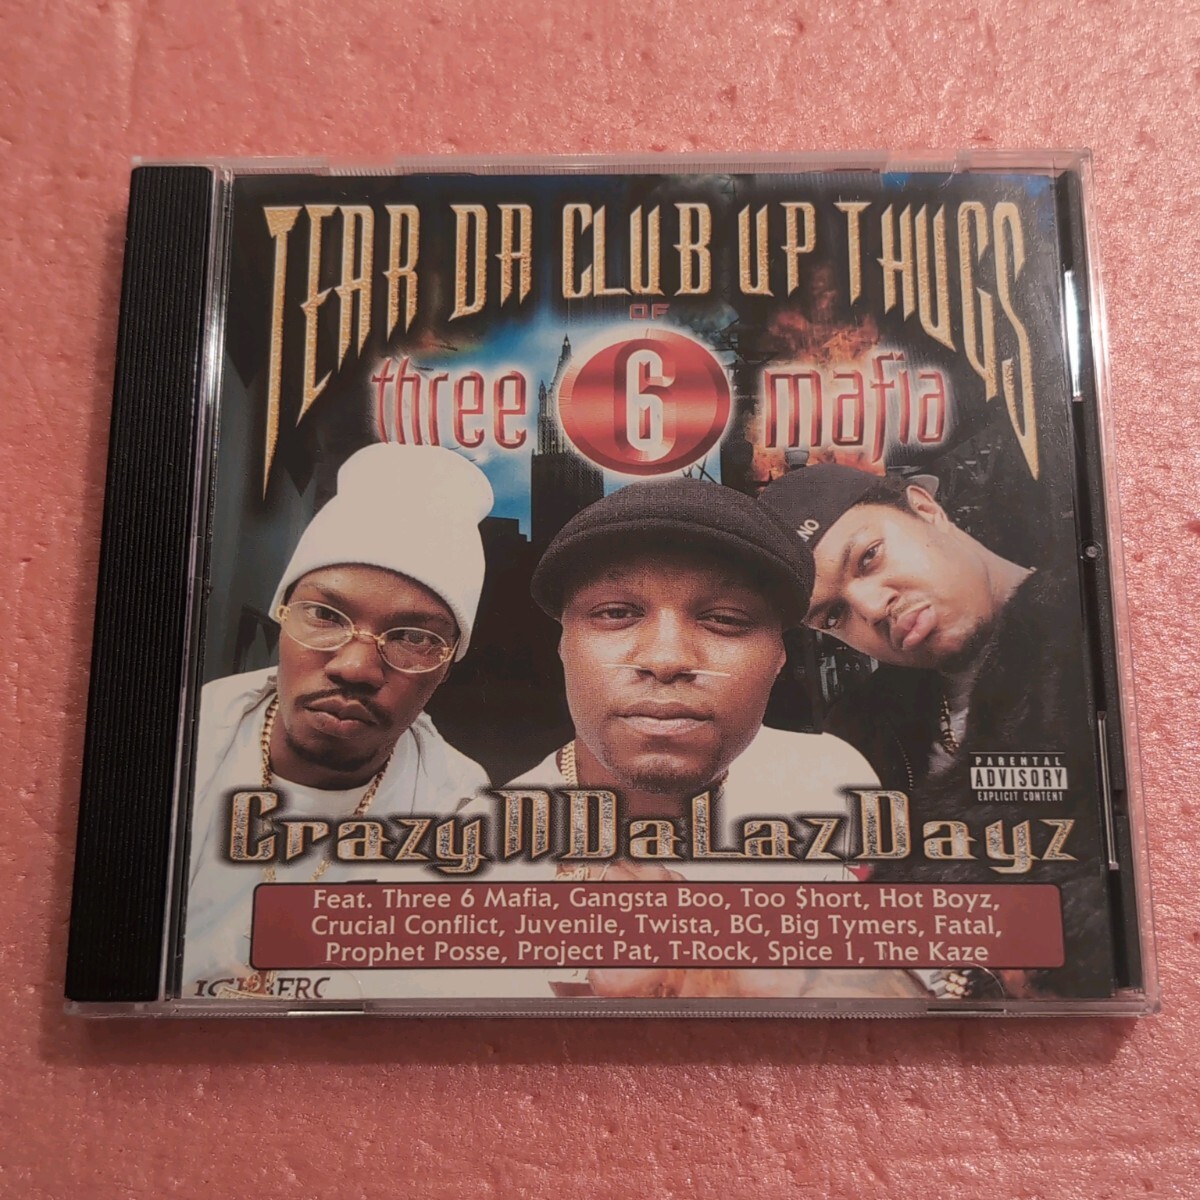 CD Tear Da Club Up Thugs Of Three 6 Mafia Crazyndalazdayz スリー6マフィア GANGSTA BOO TOO SHORT HOT BOYZ CRUCIAL CONFLICTの画像1